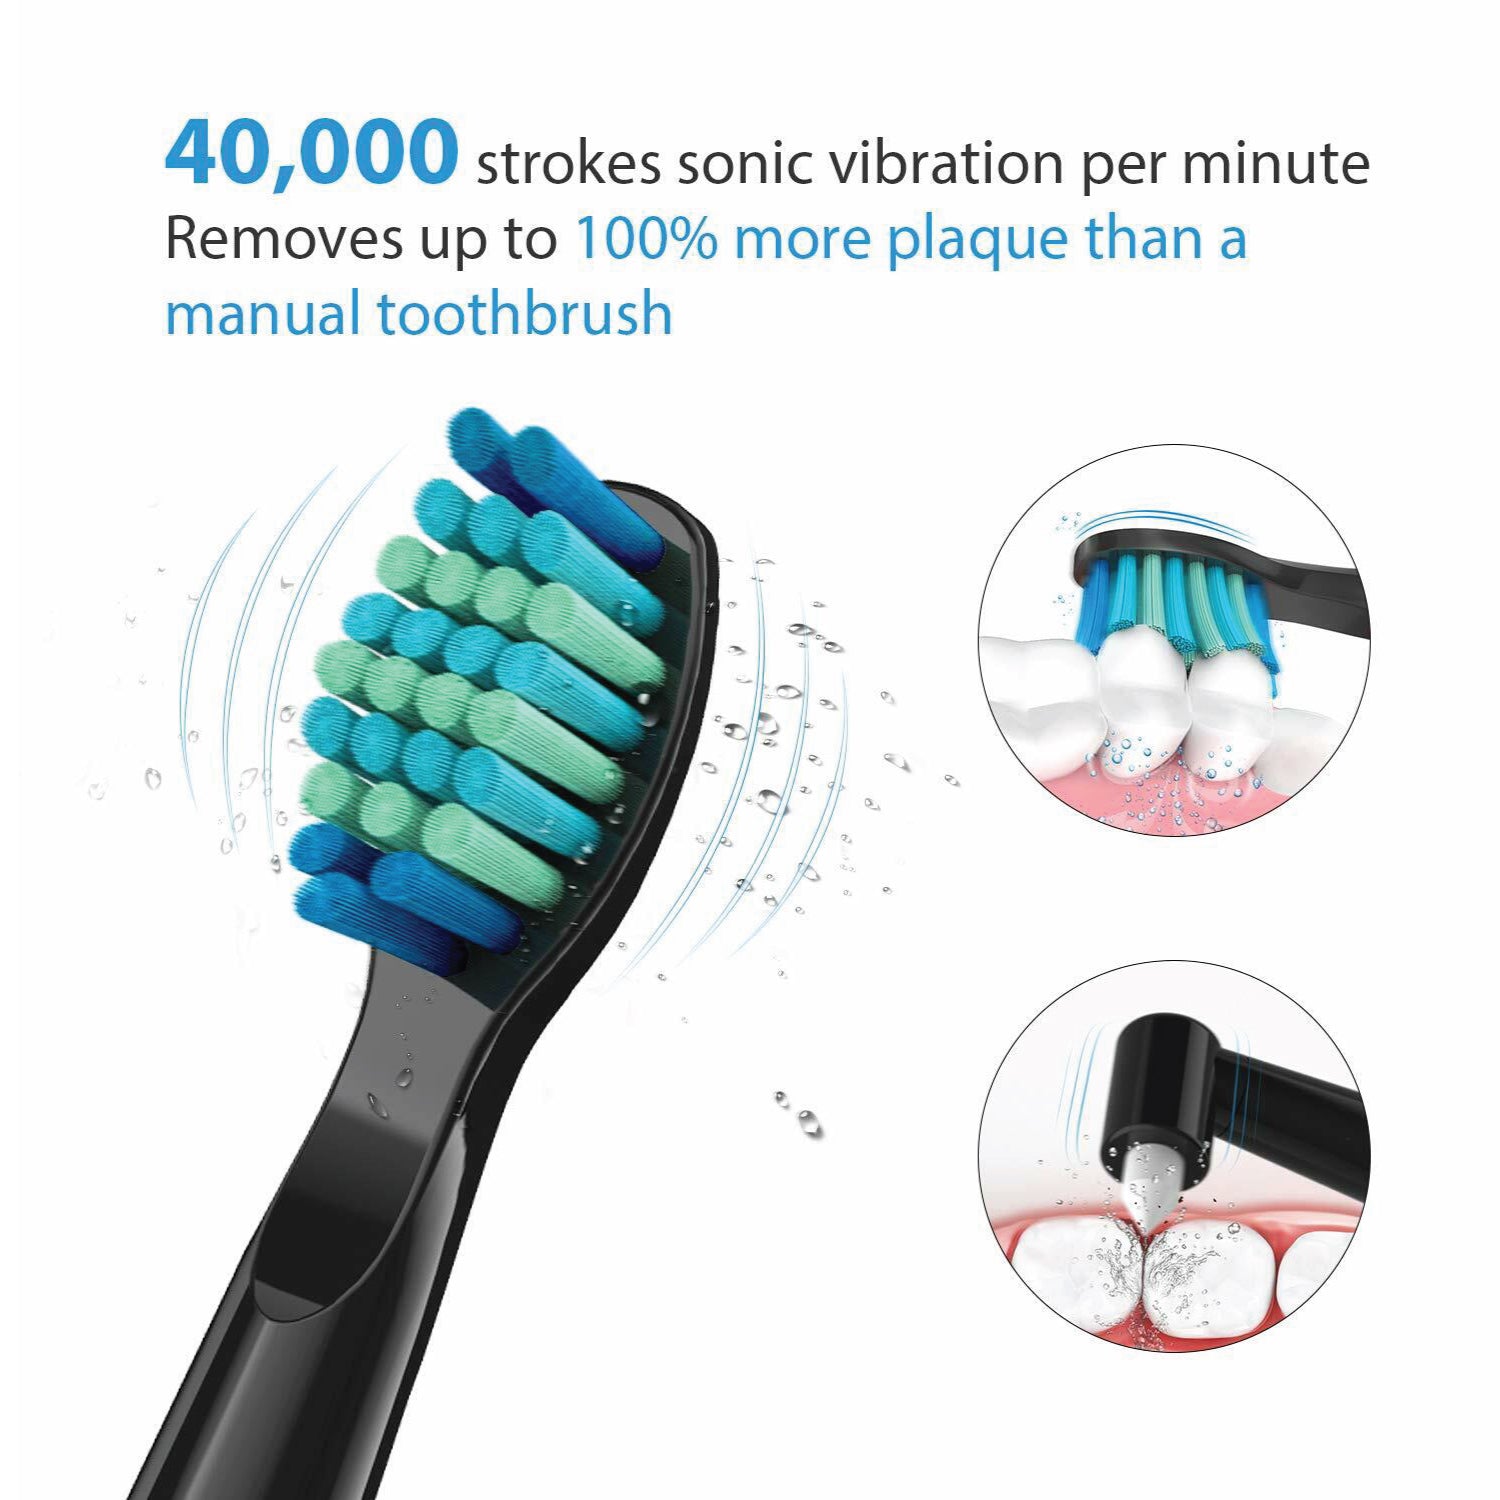 electric toothbrush - asda